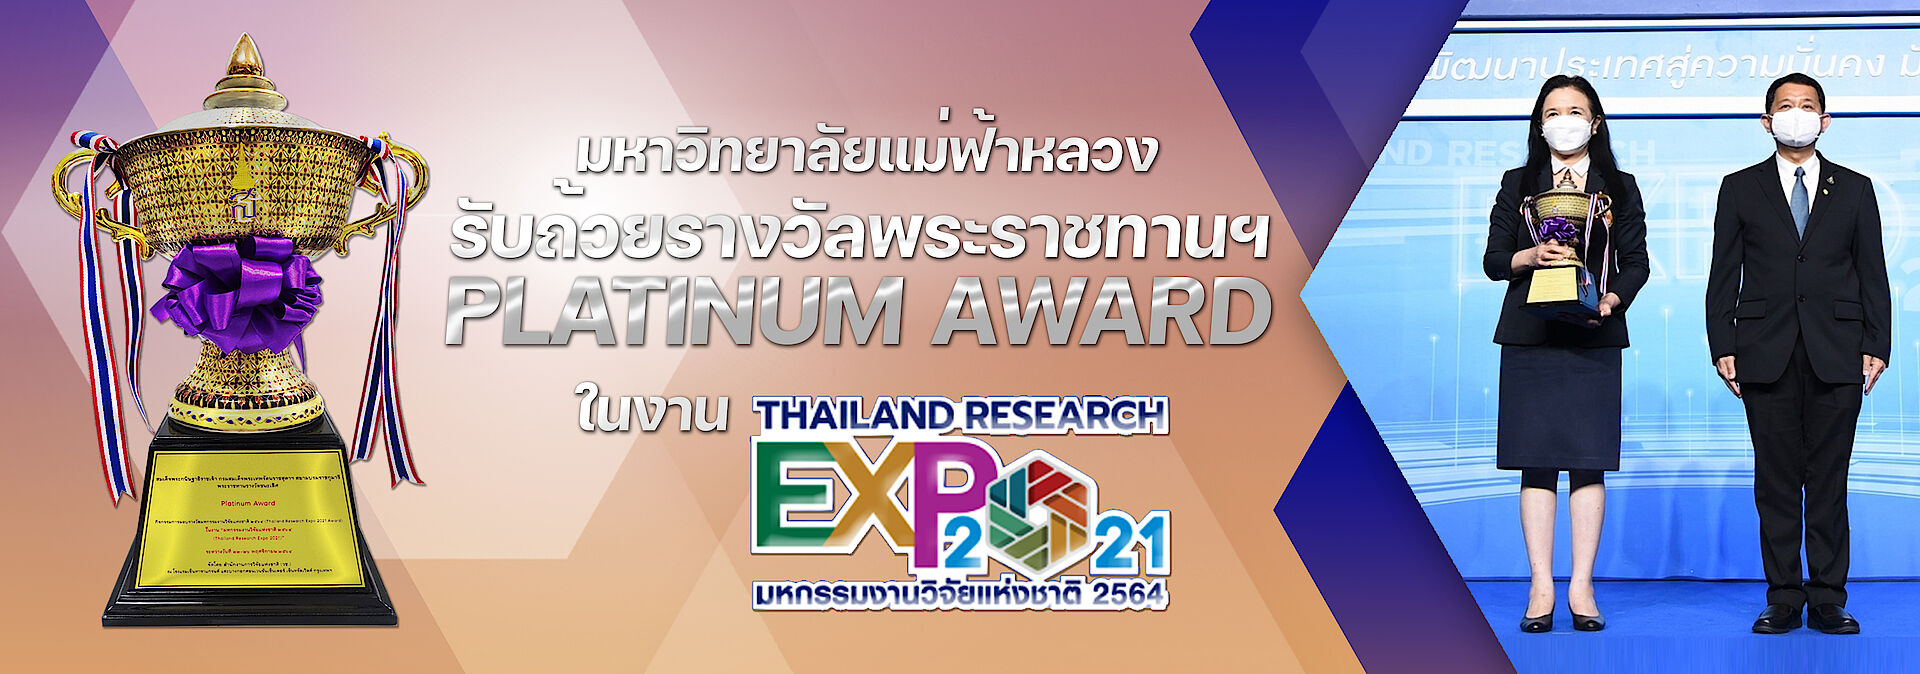 award research expo 2021